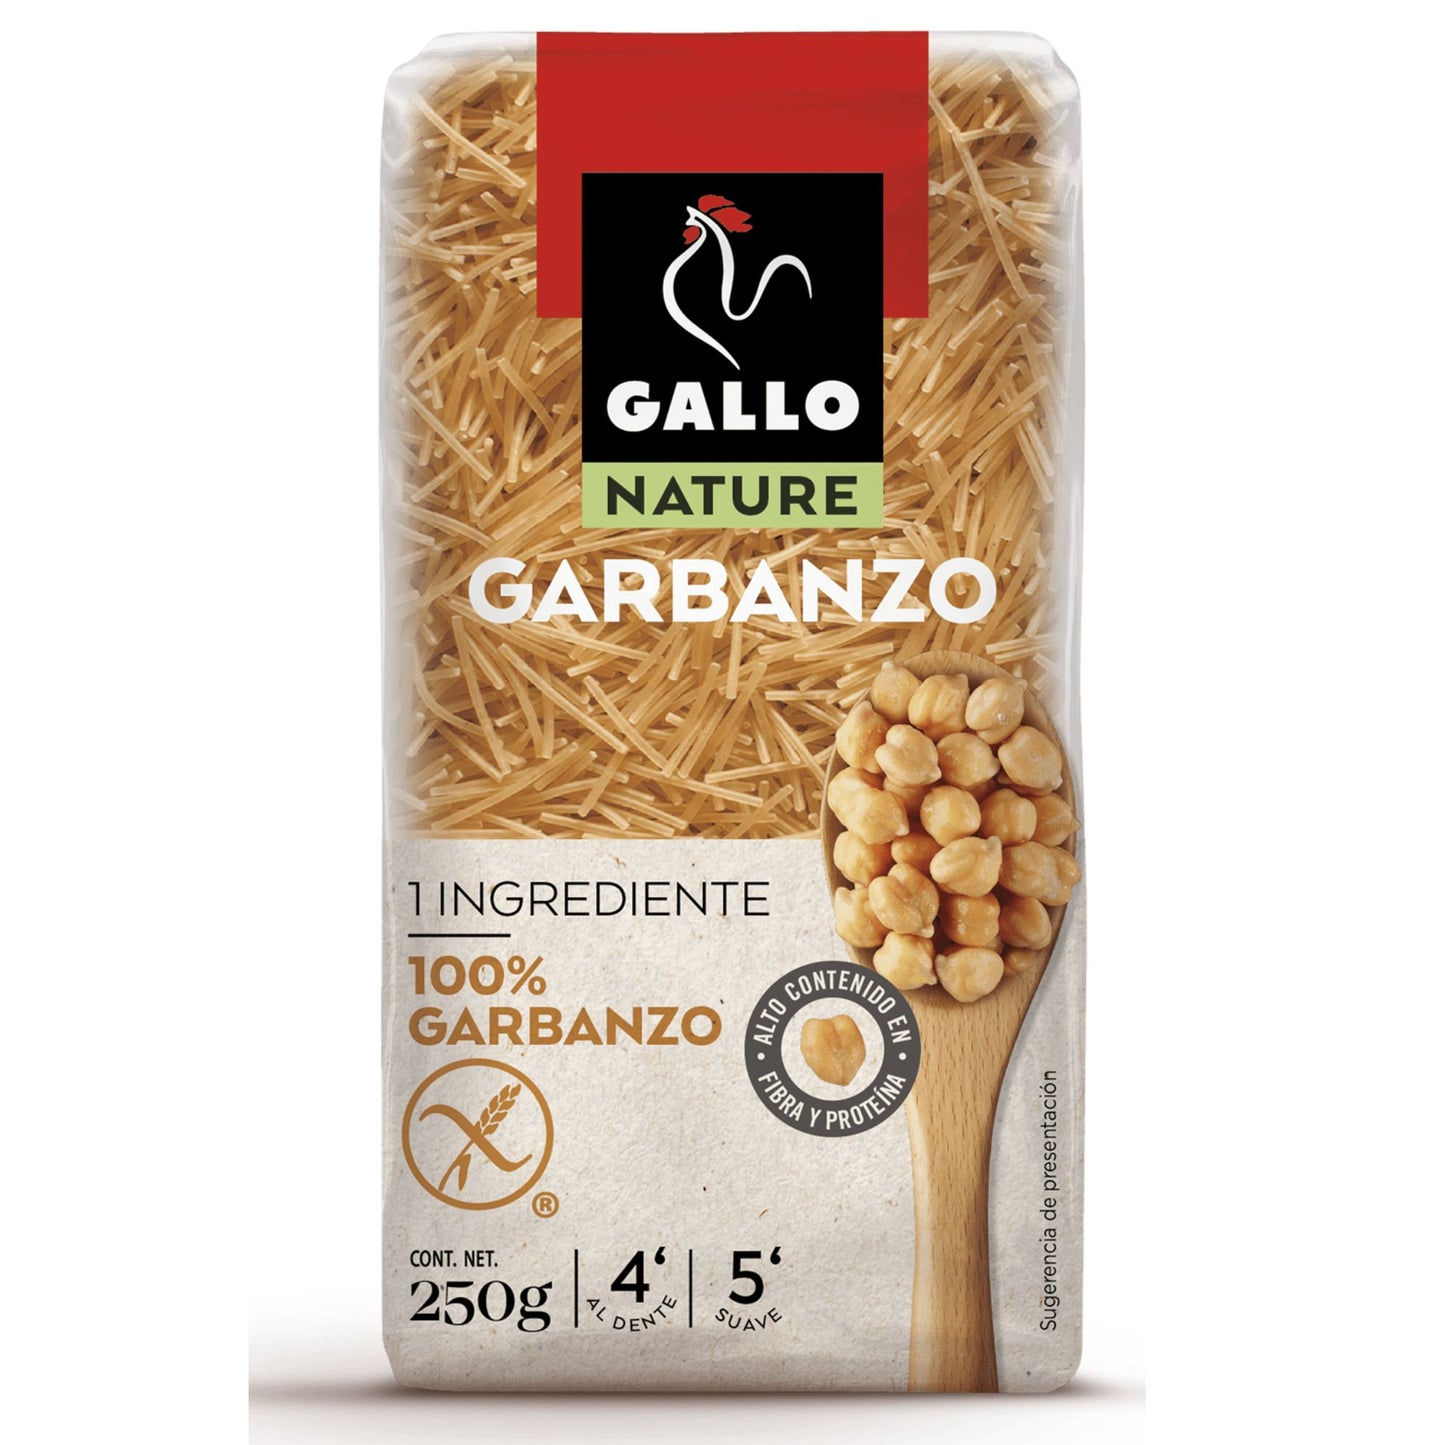 Nature Fideo Garbanzo 250g - Pastas La casa del bacalao